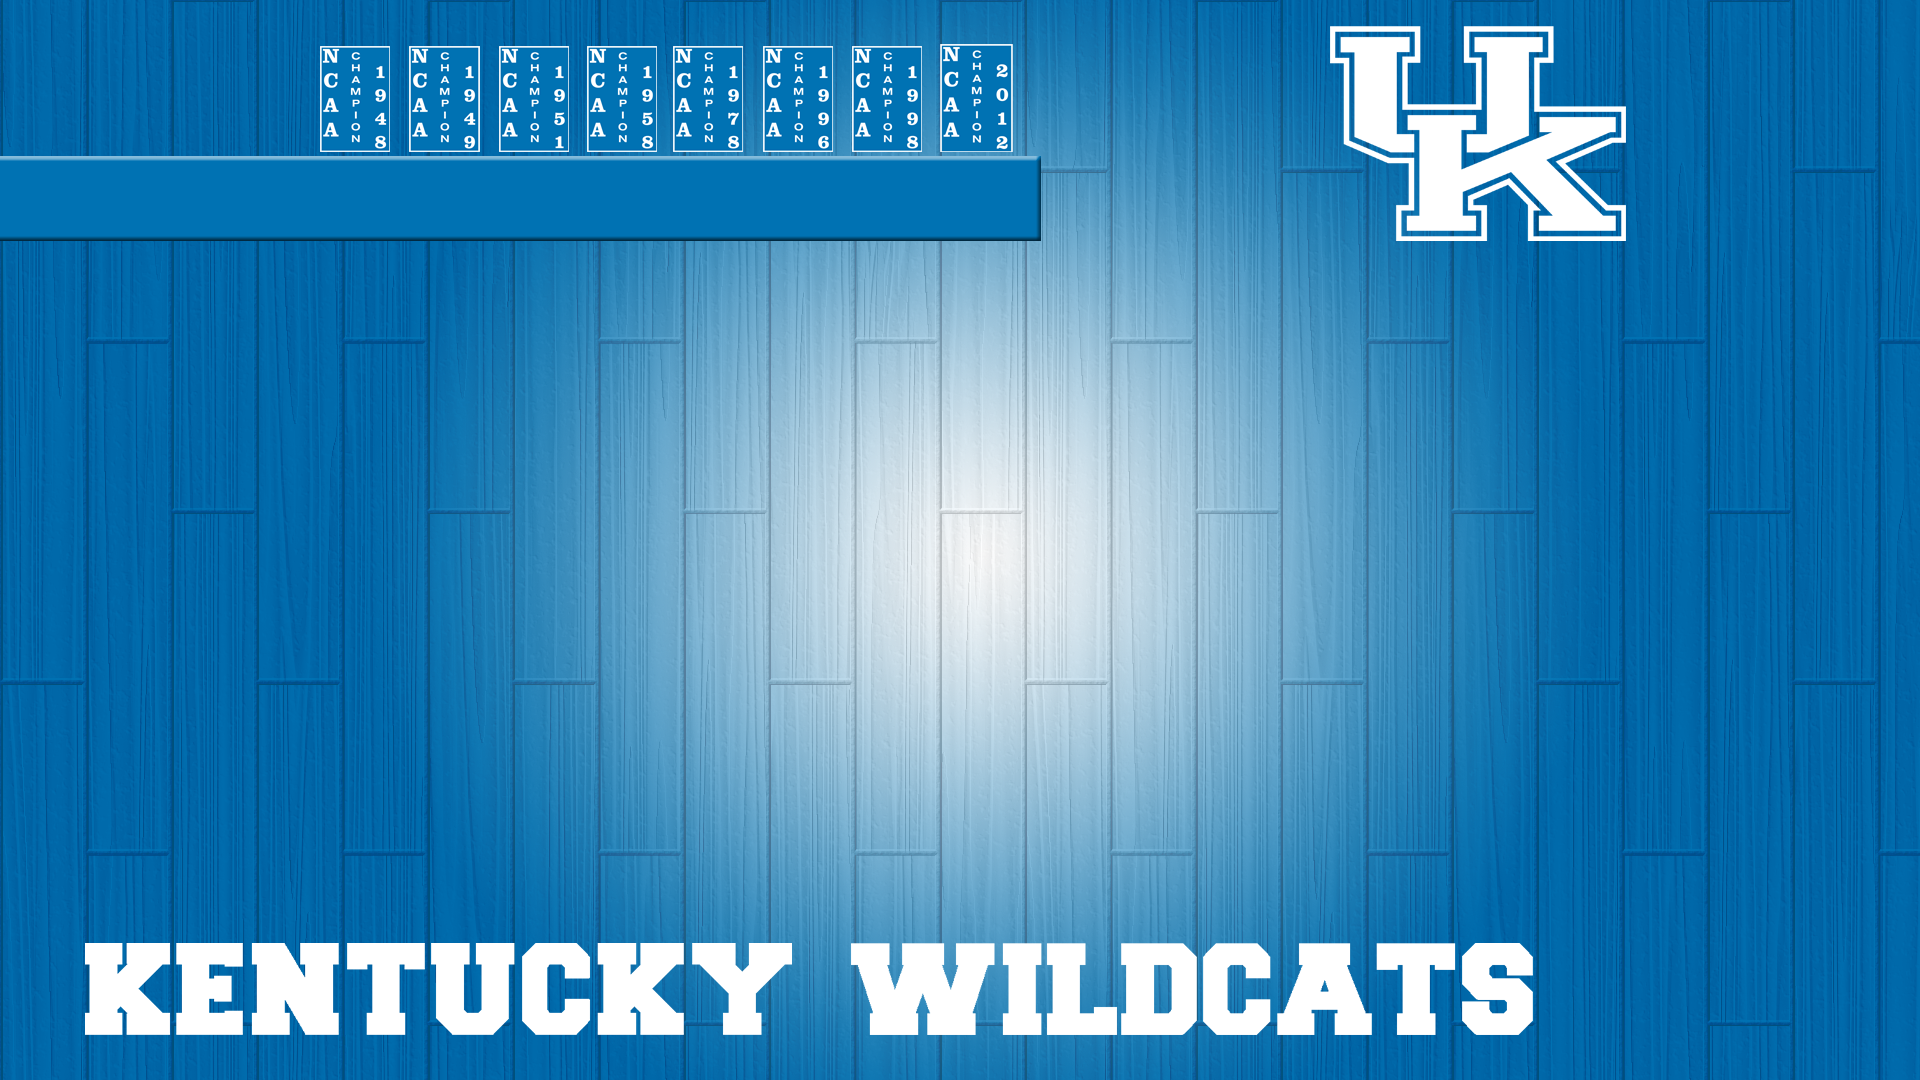 Kentucky wildcats wallpapers download free